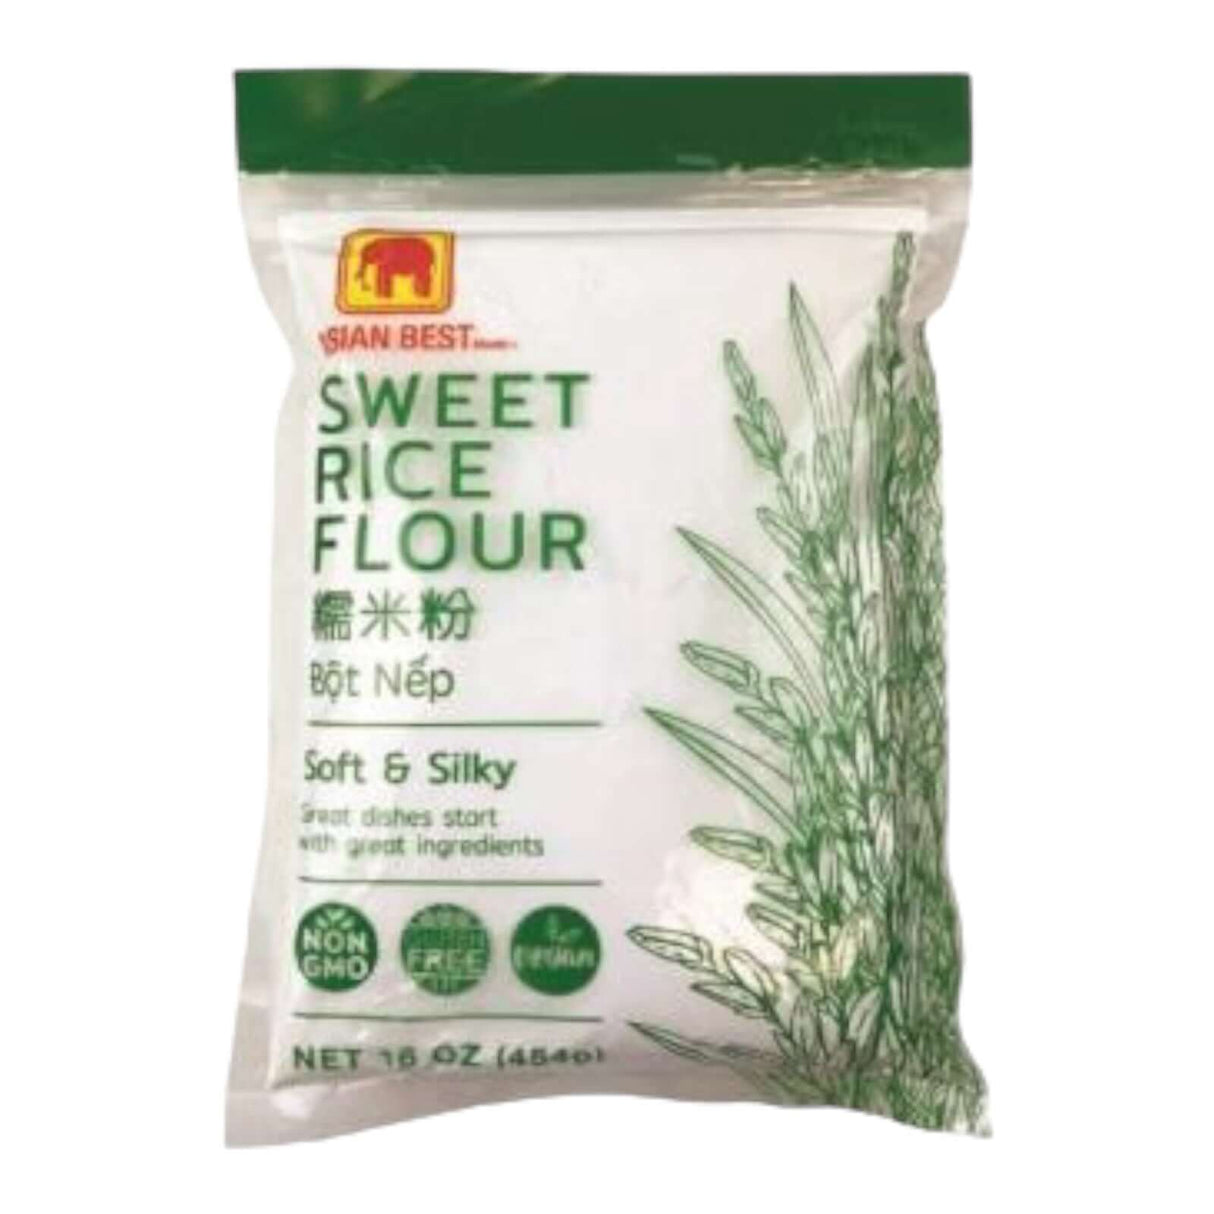 Asian Best Brand Sweet Rice Flour